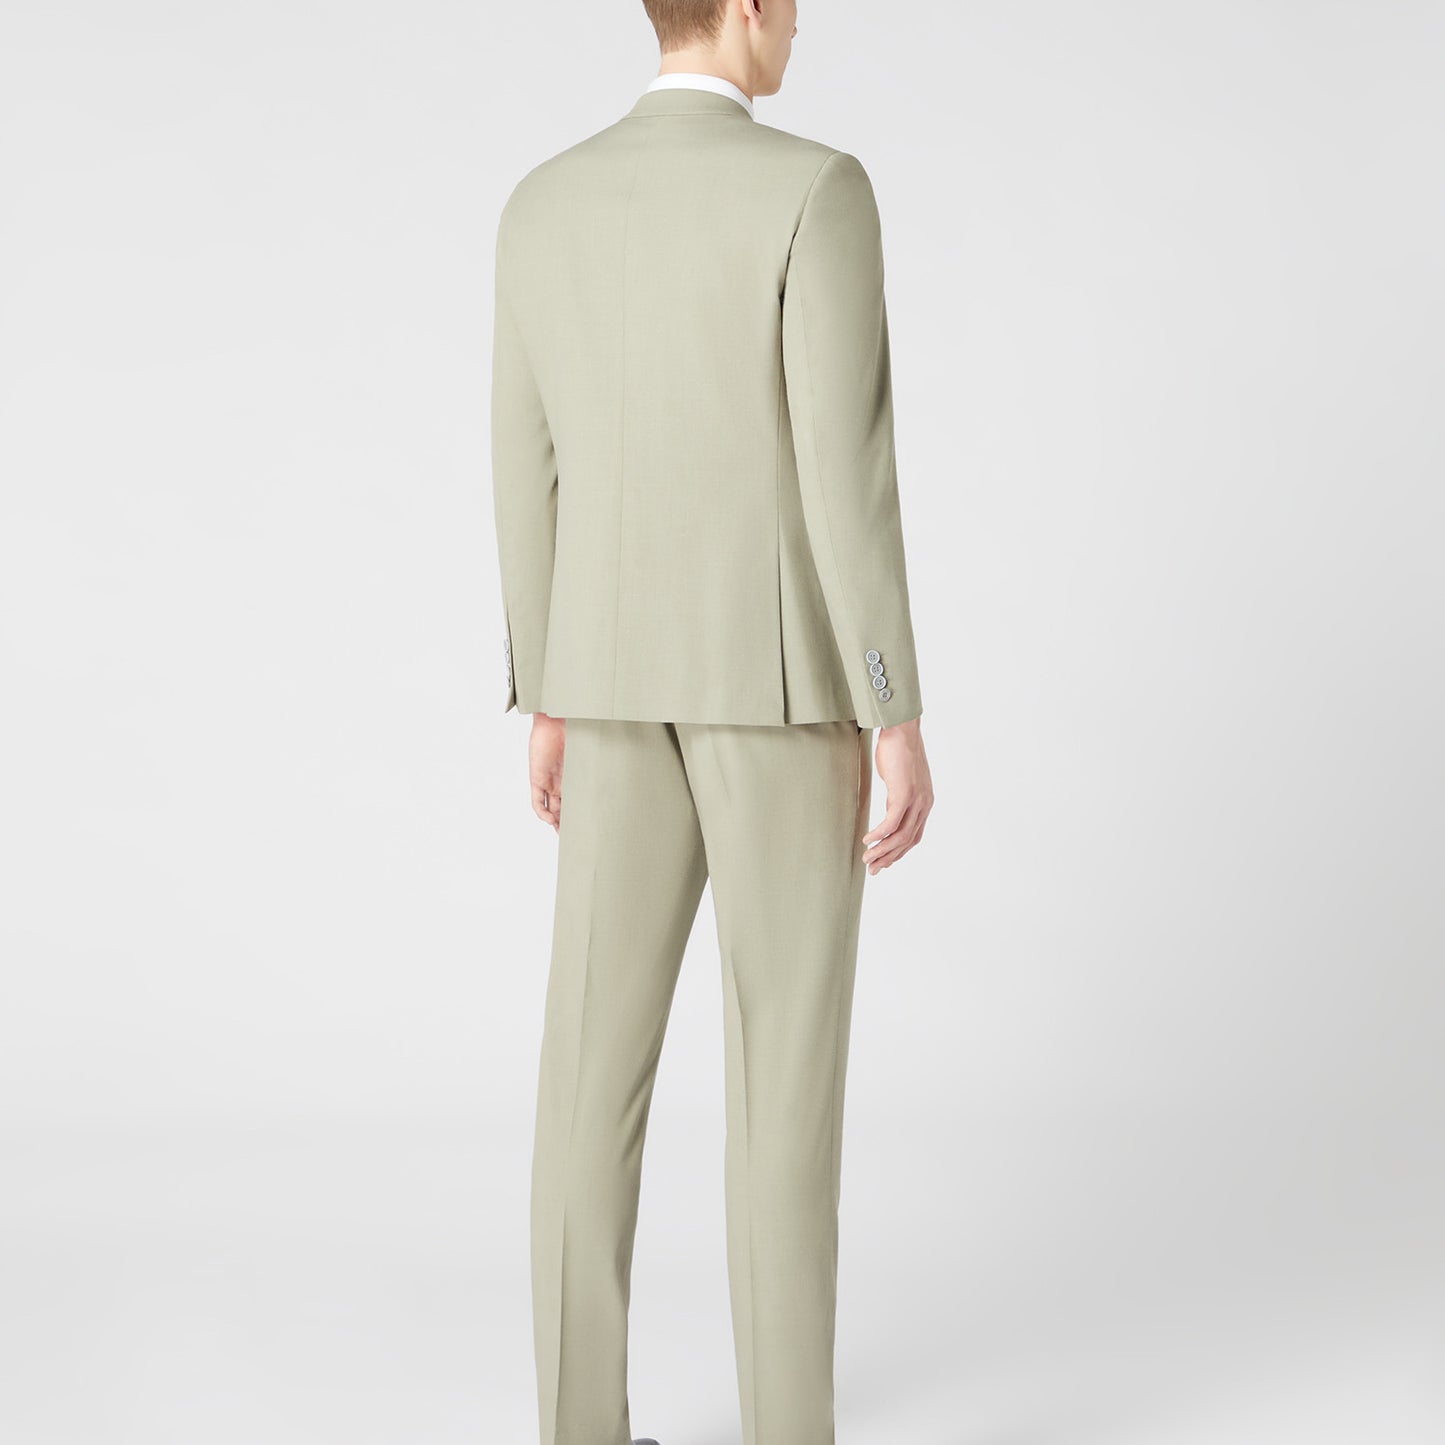 Remus Uomo 32208 35 Olive X-Slim Suit